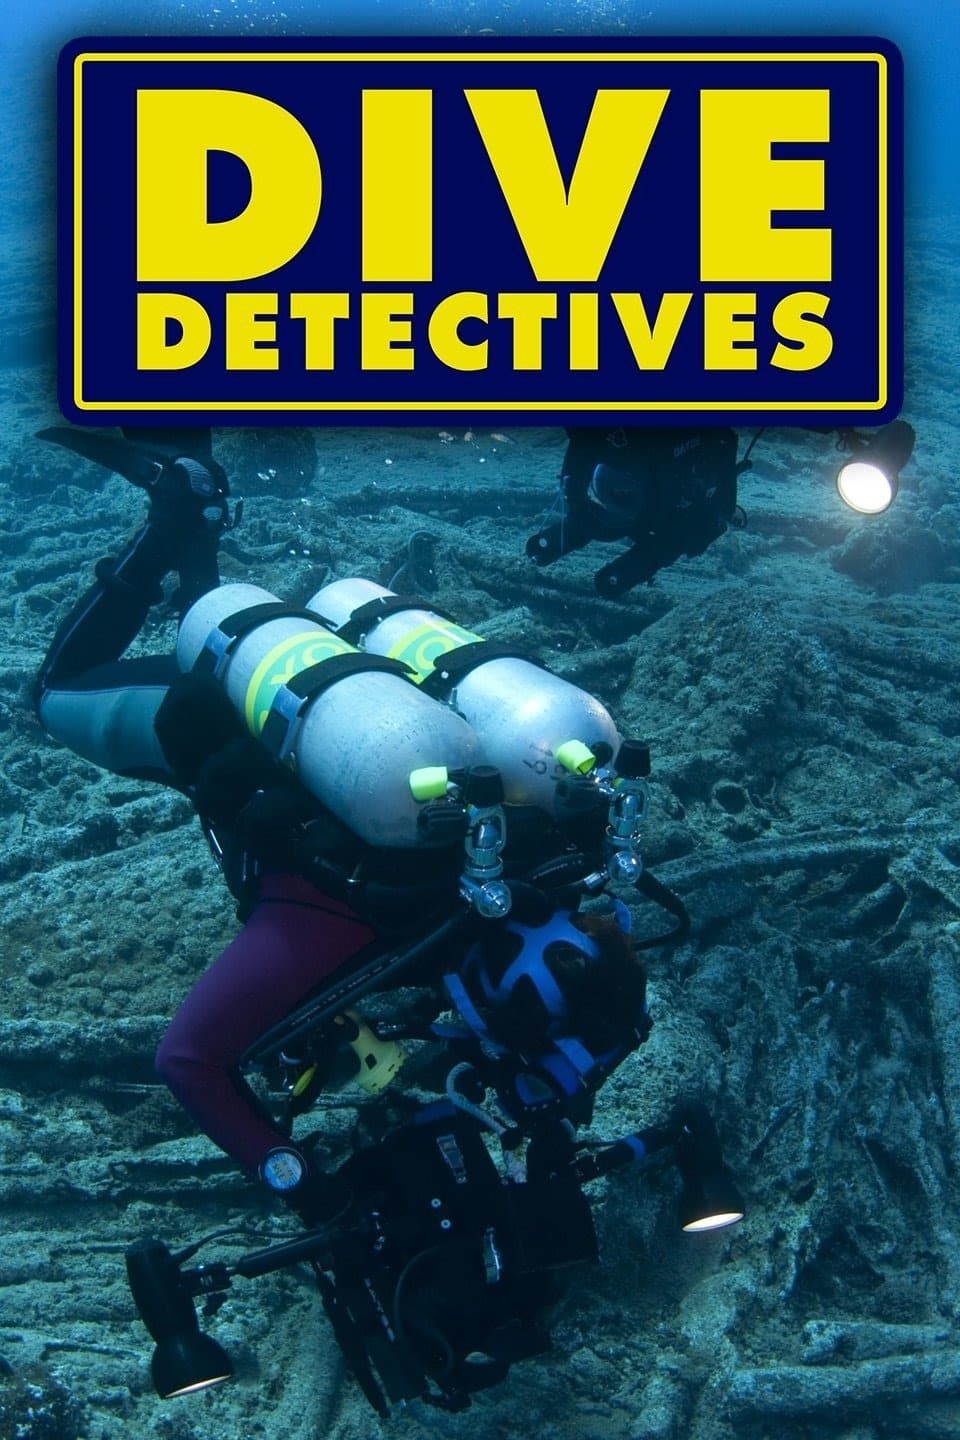 Dive Detectives